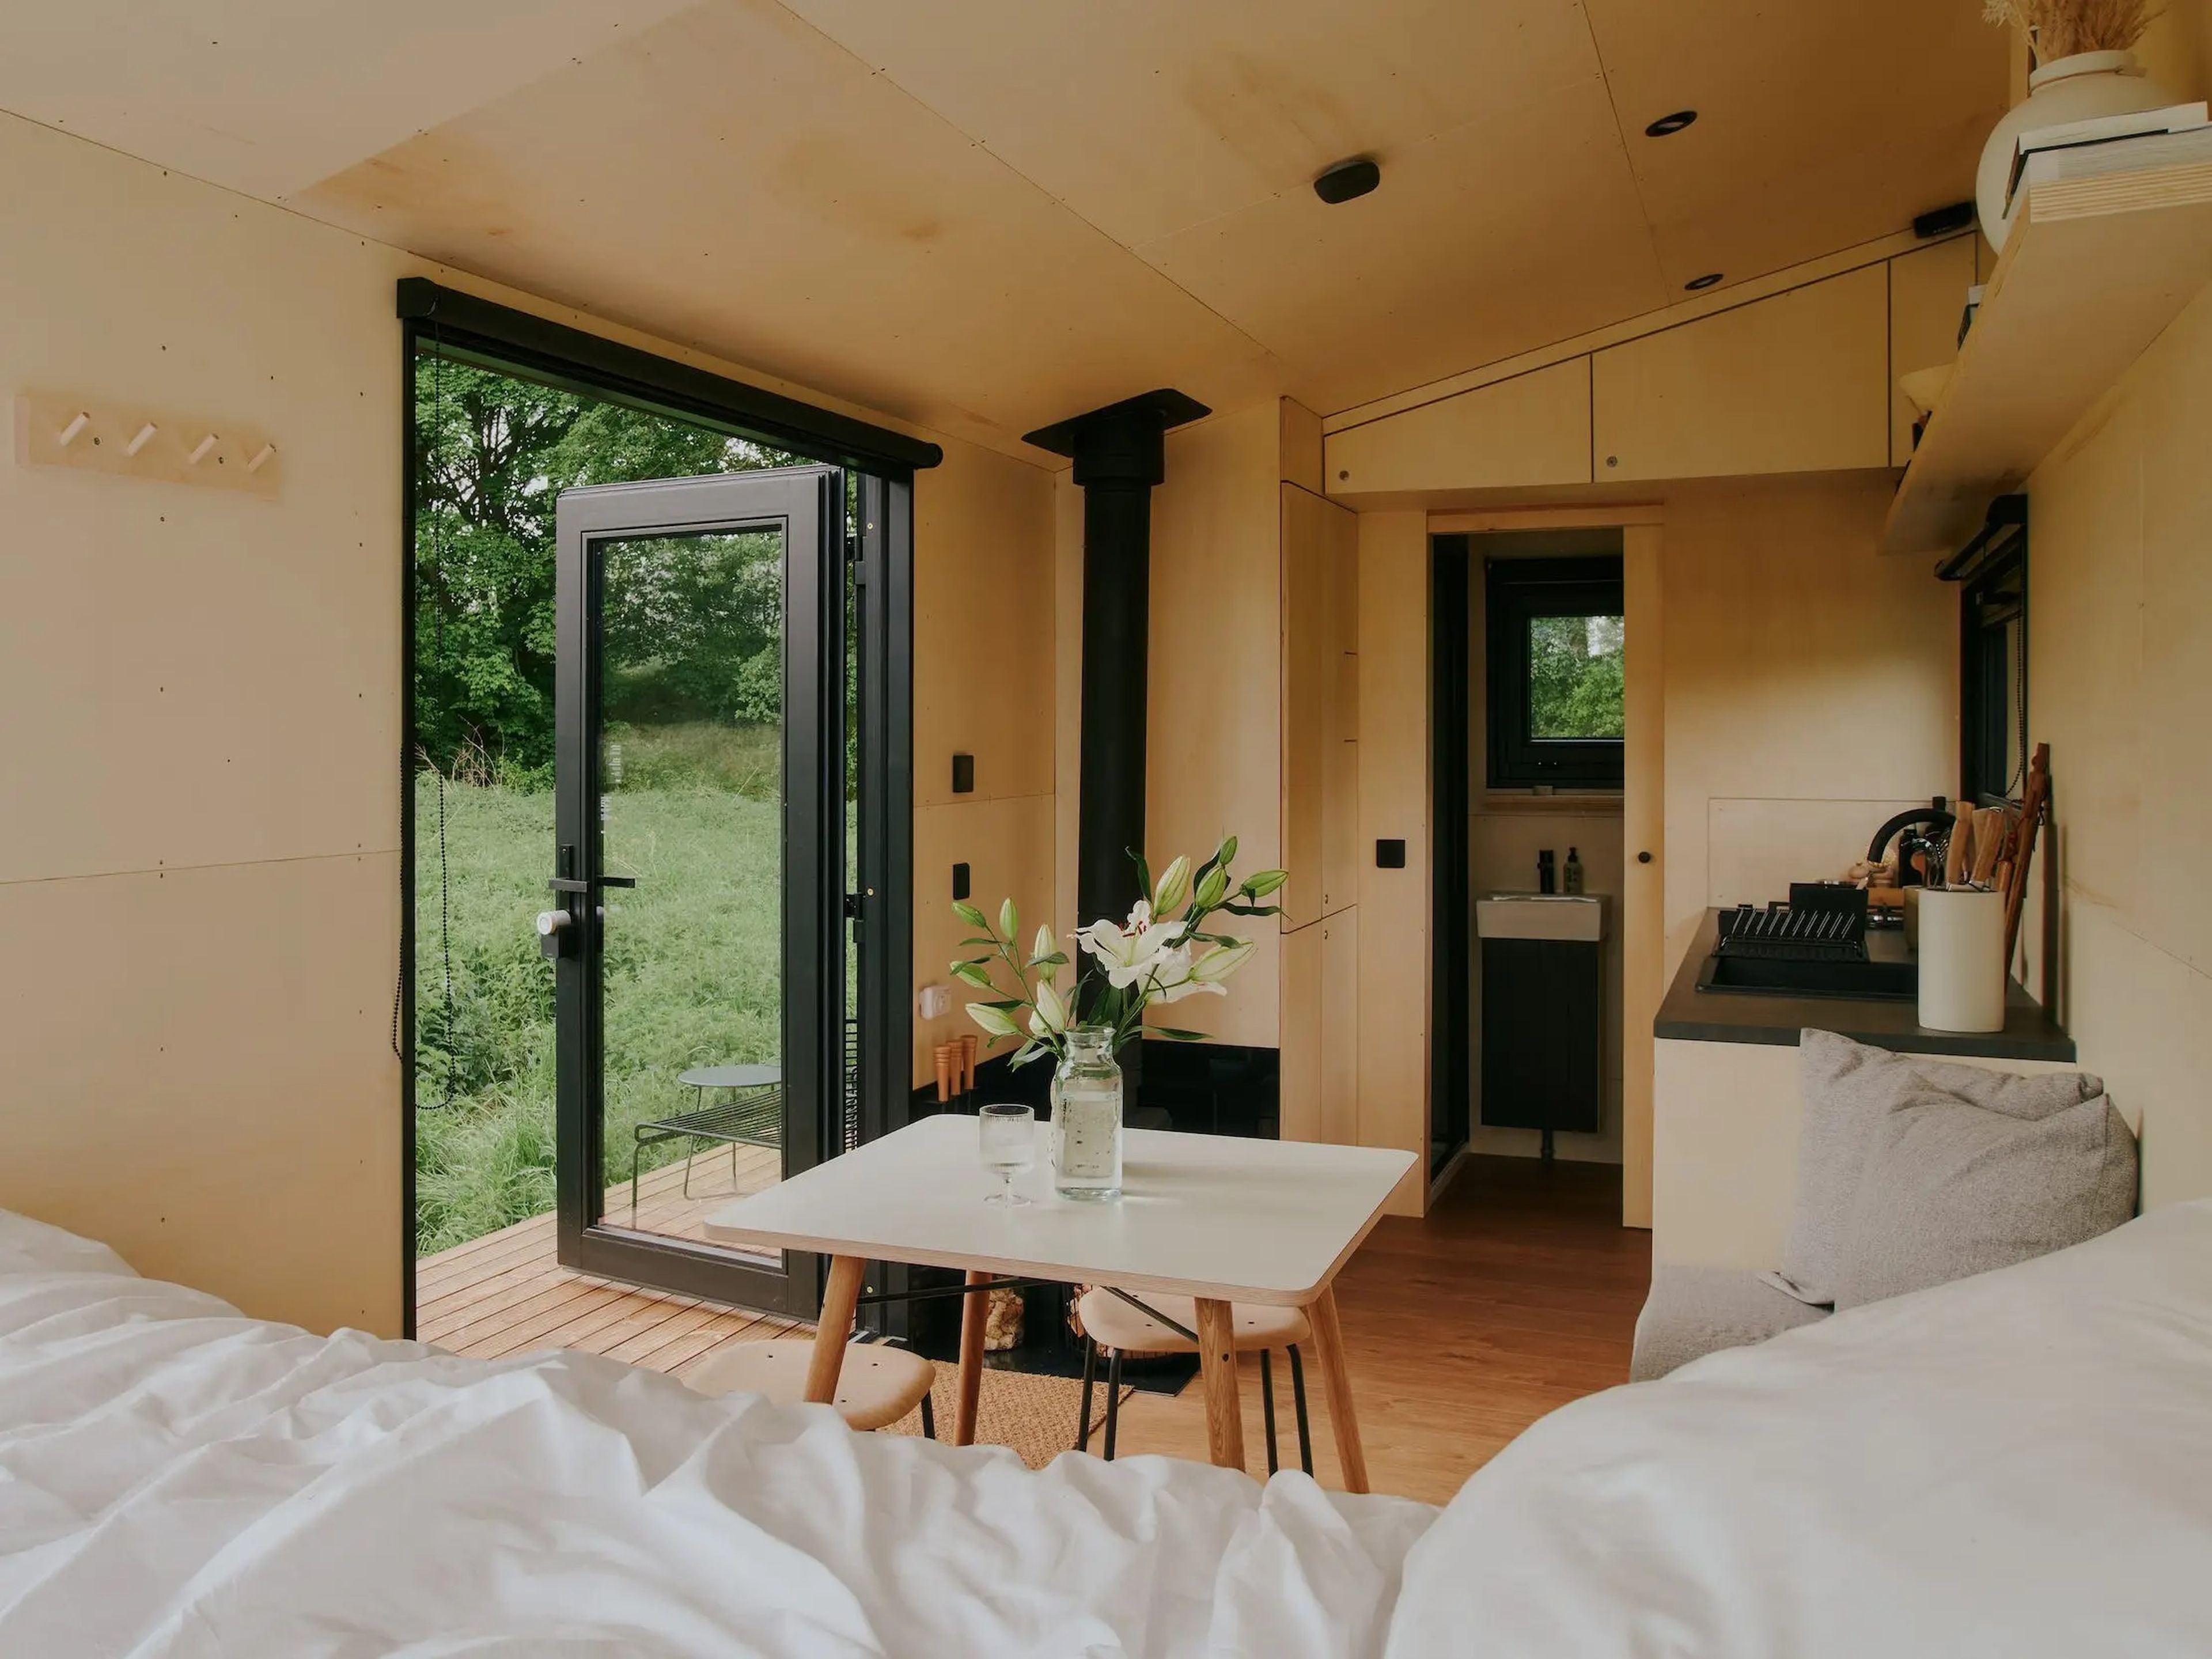 Estas cabañas tienen cama, mesa de comedor, cocina un baño y ventanas con vistas al campo.